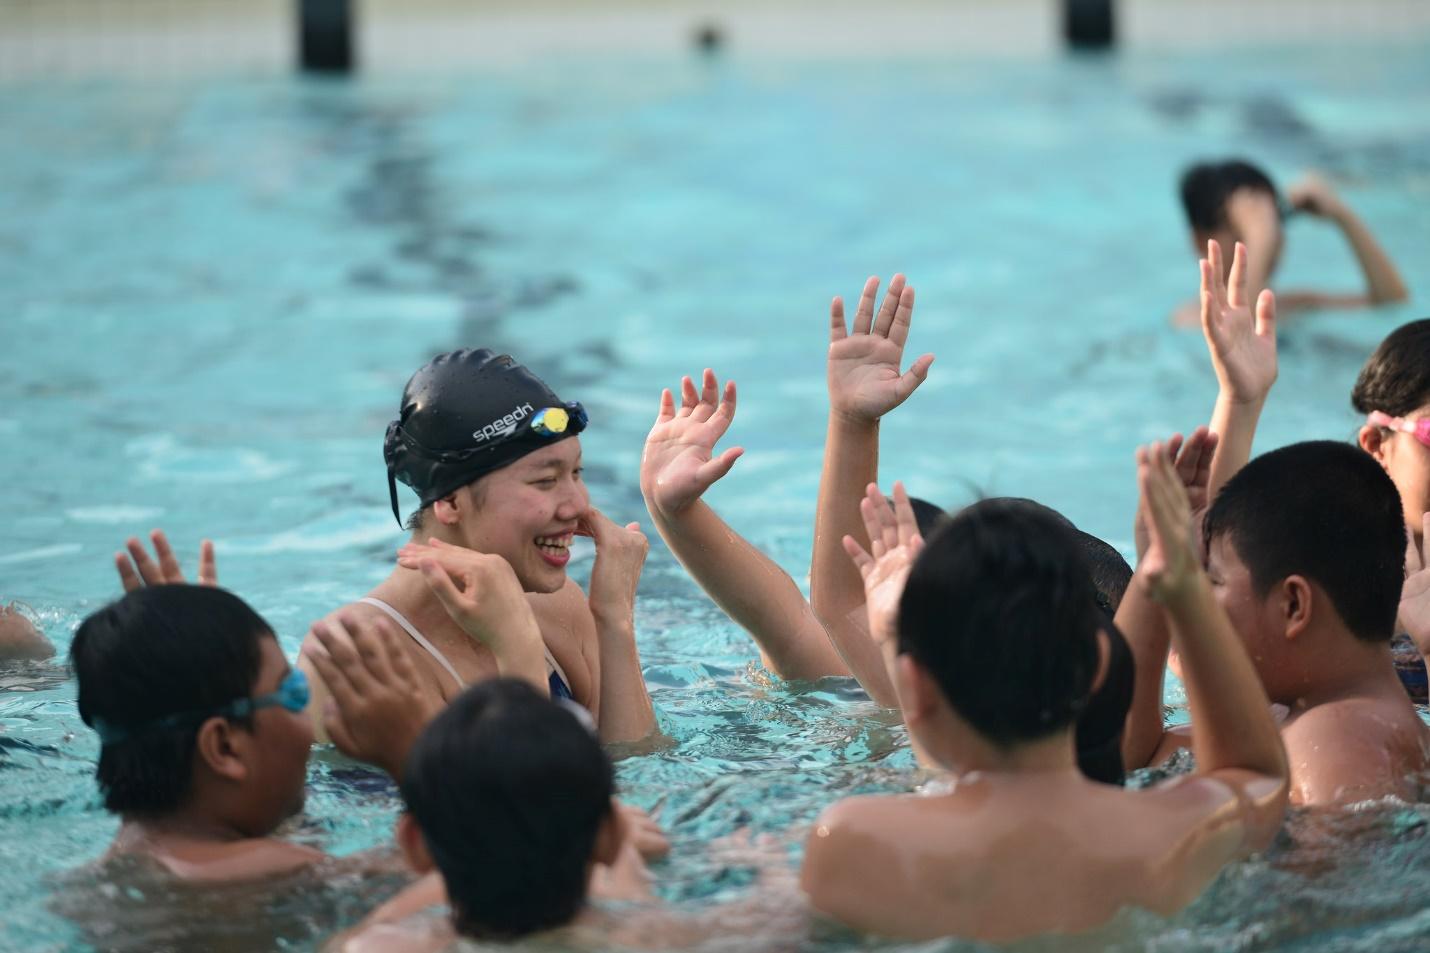 Học kỹ năng phòng chống đuối nước và tập bơi cùng Vận động viên đỉnh cao Ánh Viên là những hoạt động mà con em khách hàng thân thiết của Viettel được trải nghiệm trong trại hè năm 2017 với chủ đề thể thao